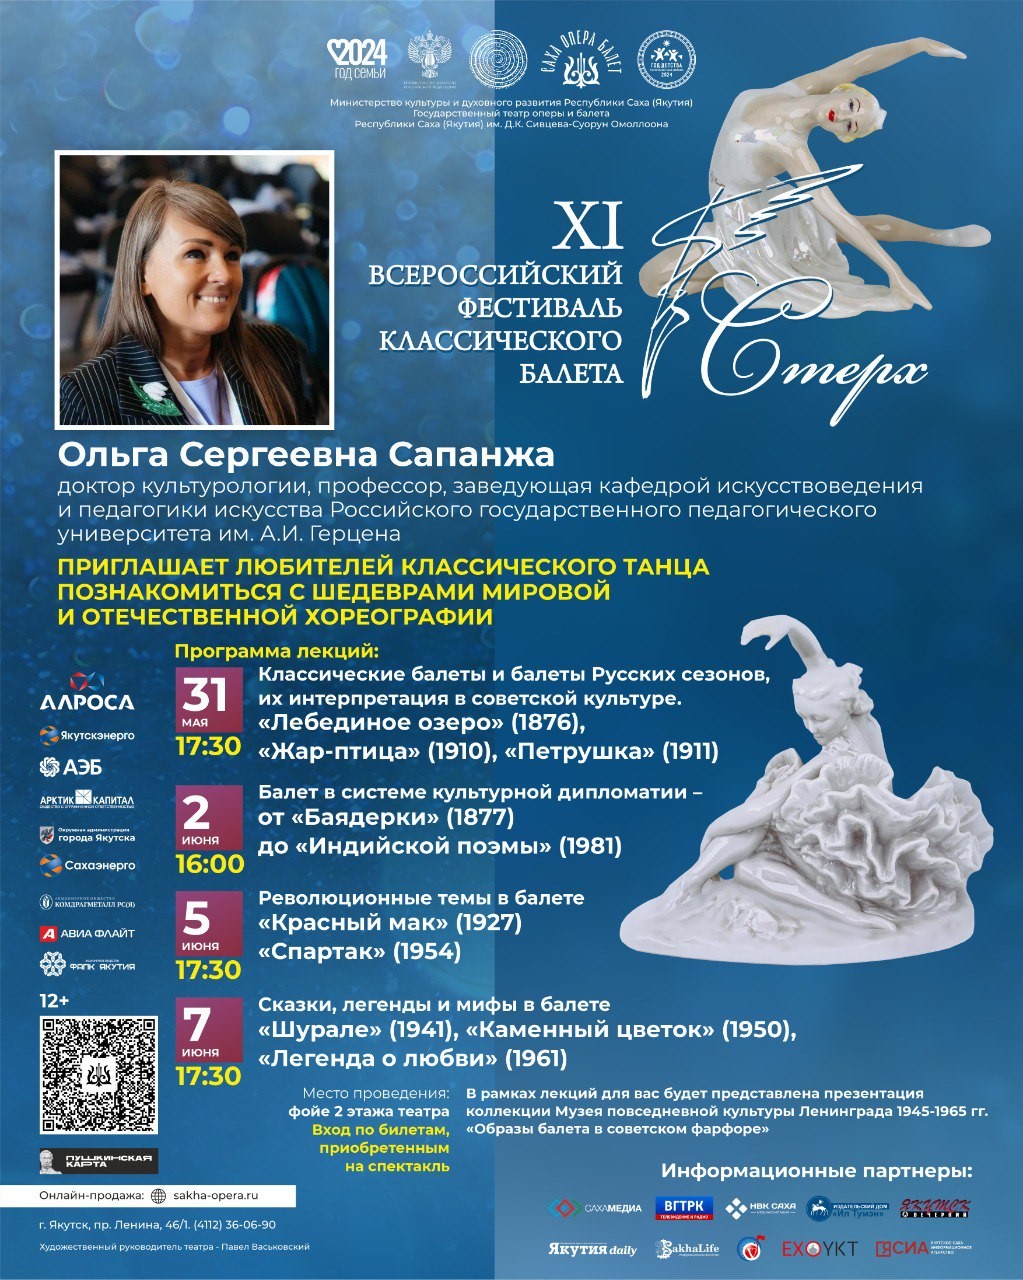 Доктор культурологии Ольга Сапанжа проведет лекции в Якутске в рамках XI Всероссийского фестиваля классического балета 